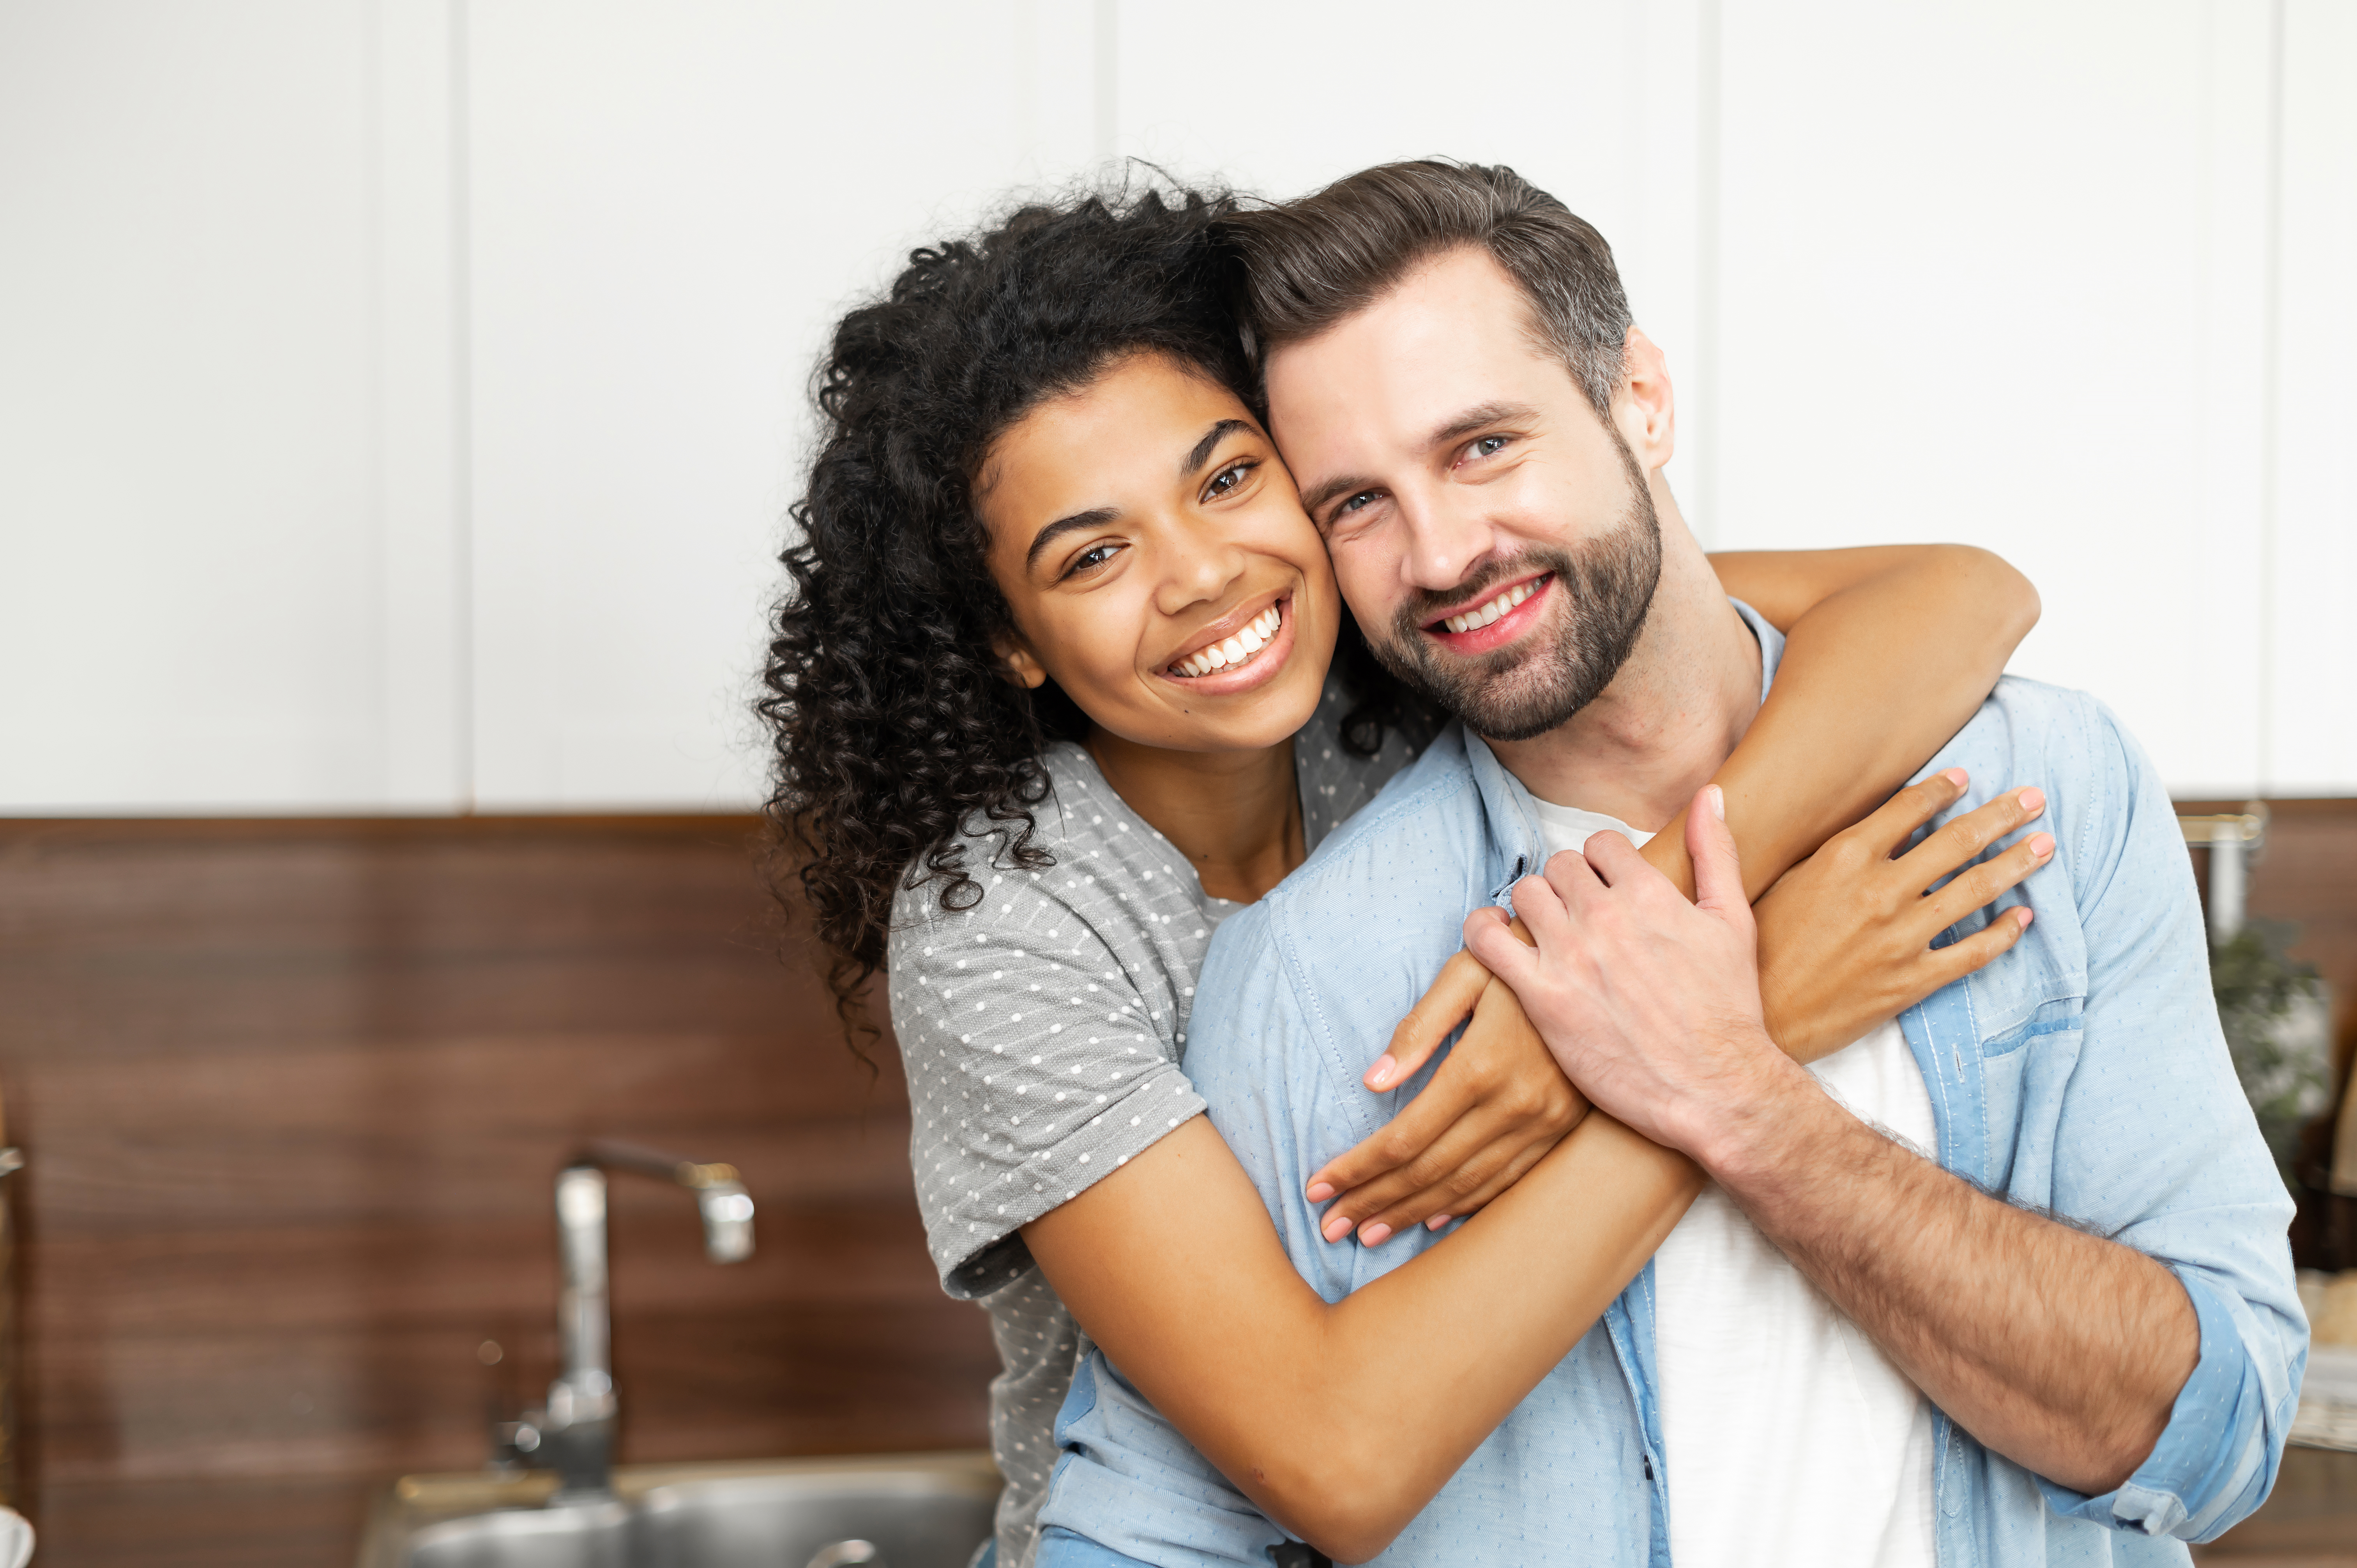 An interracial couple | Source: Shutterstock